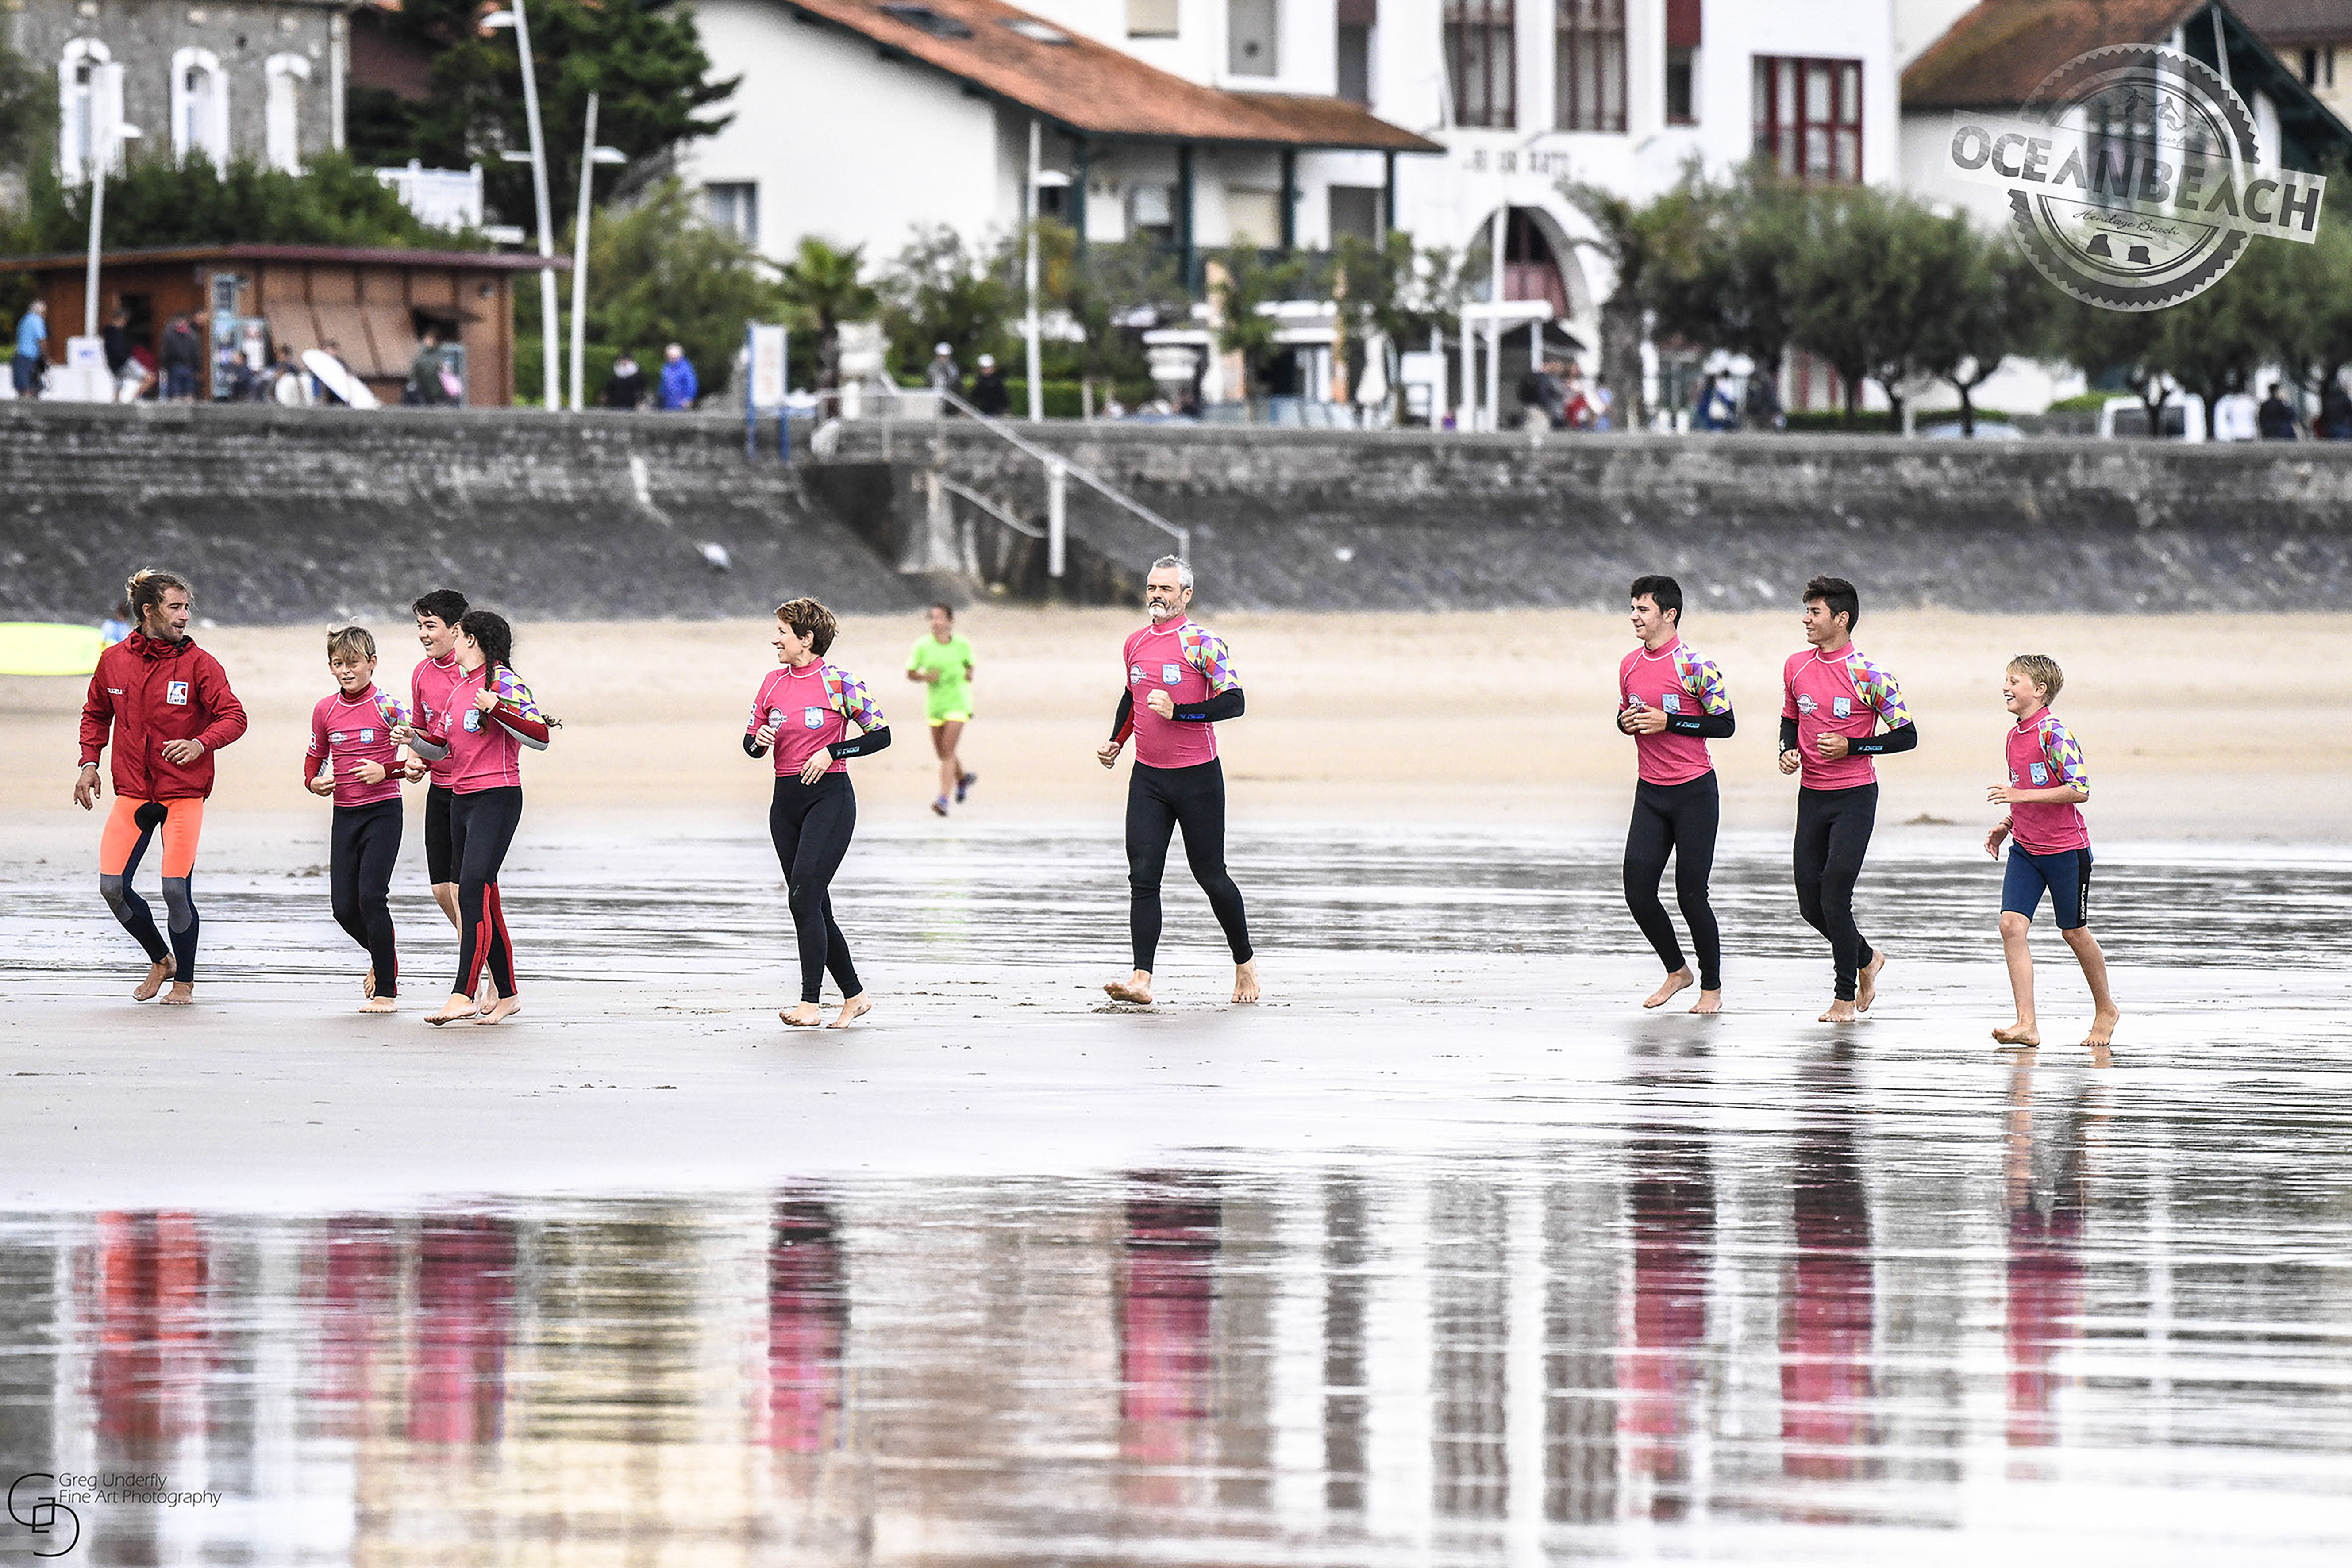 école de surf hendaye côte basque pays basque hendaia cours de surf France classe surf Hendaye